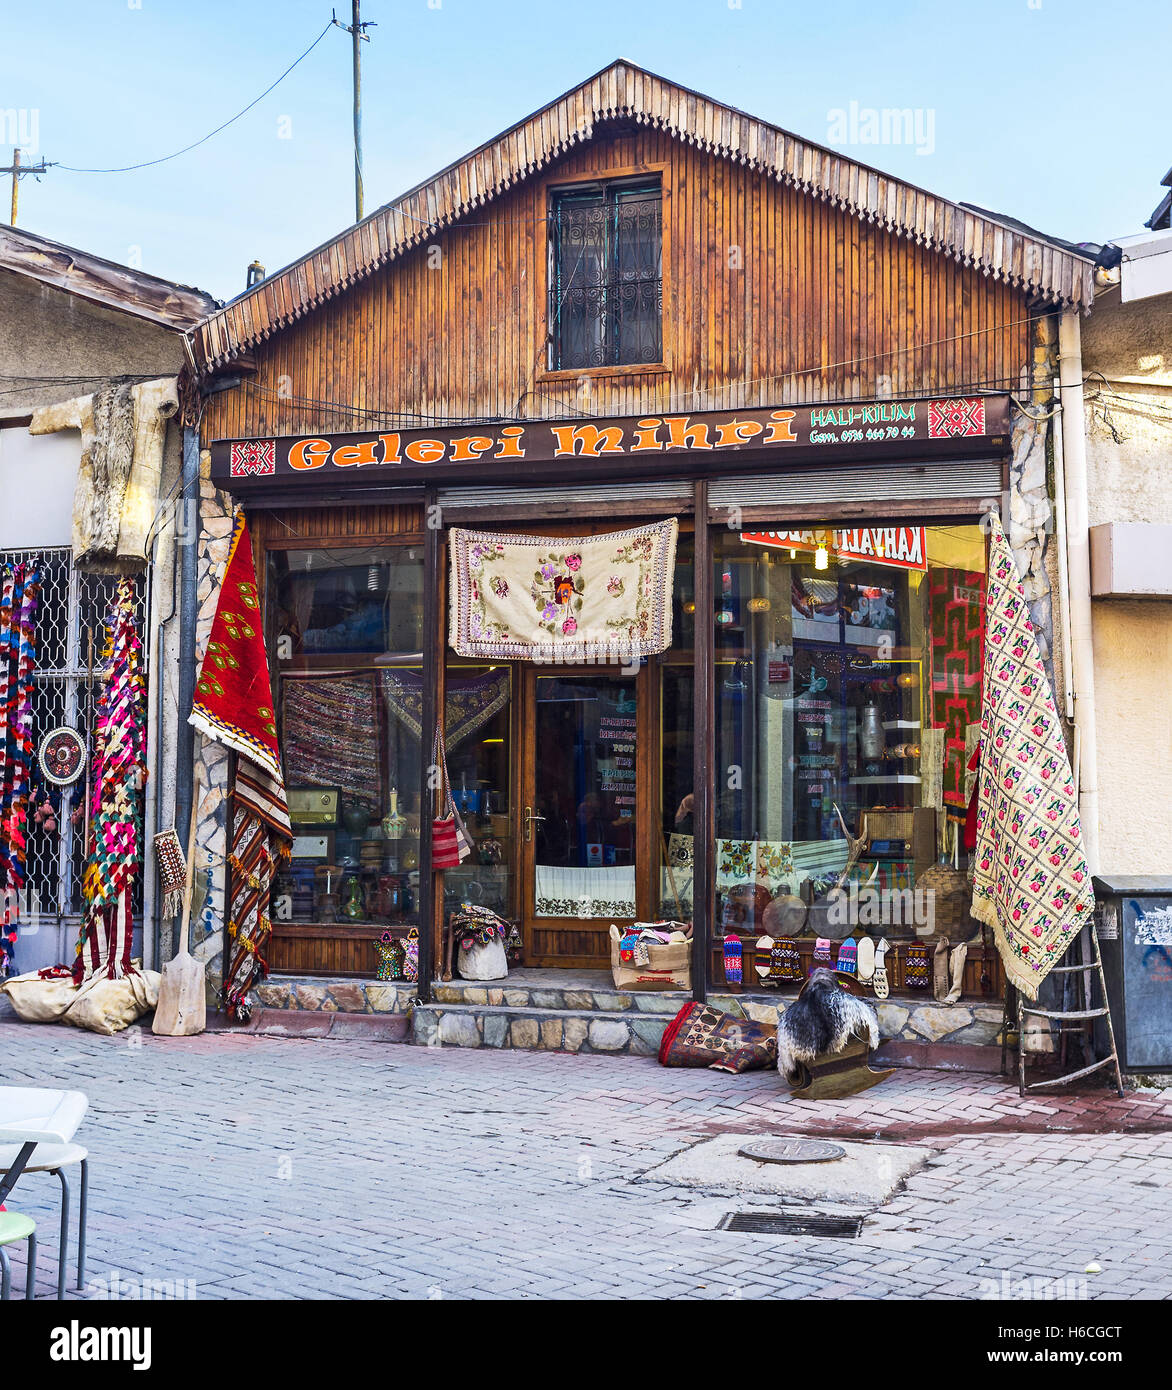 La boutique d'antiquités, sur la rue du marché traditionnel avec de nombreux tapis vintage brodé et tableclothes Banque D'Images